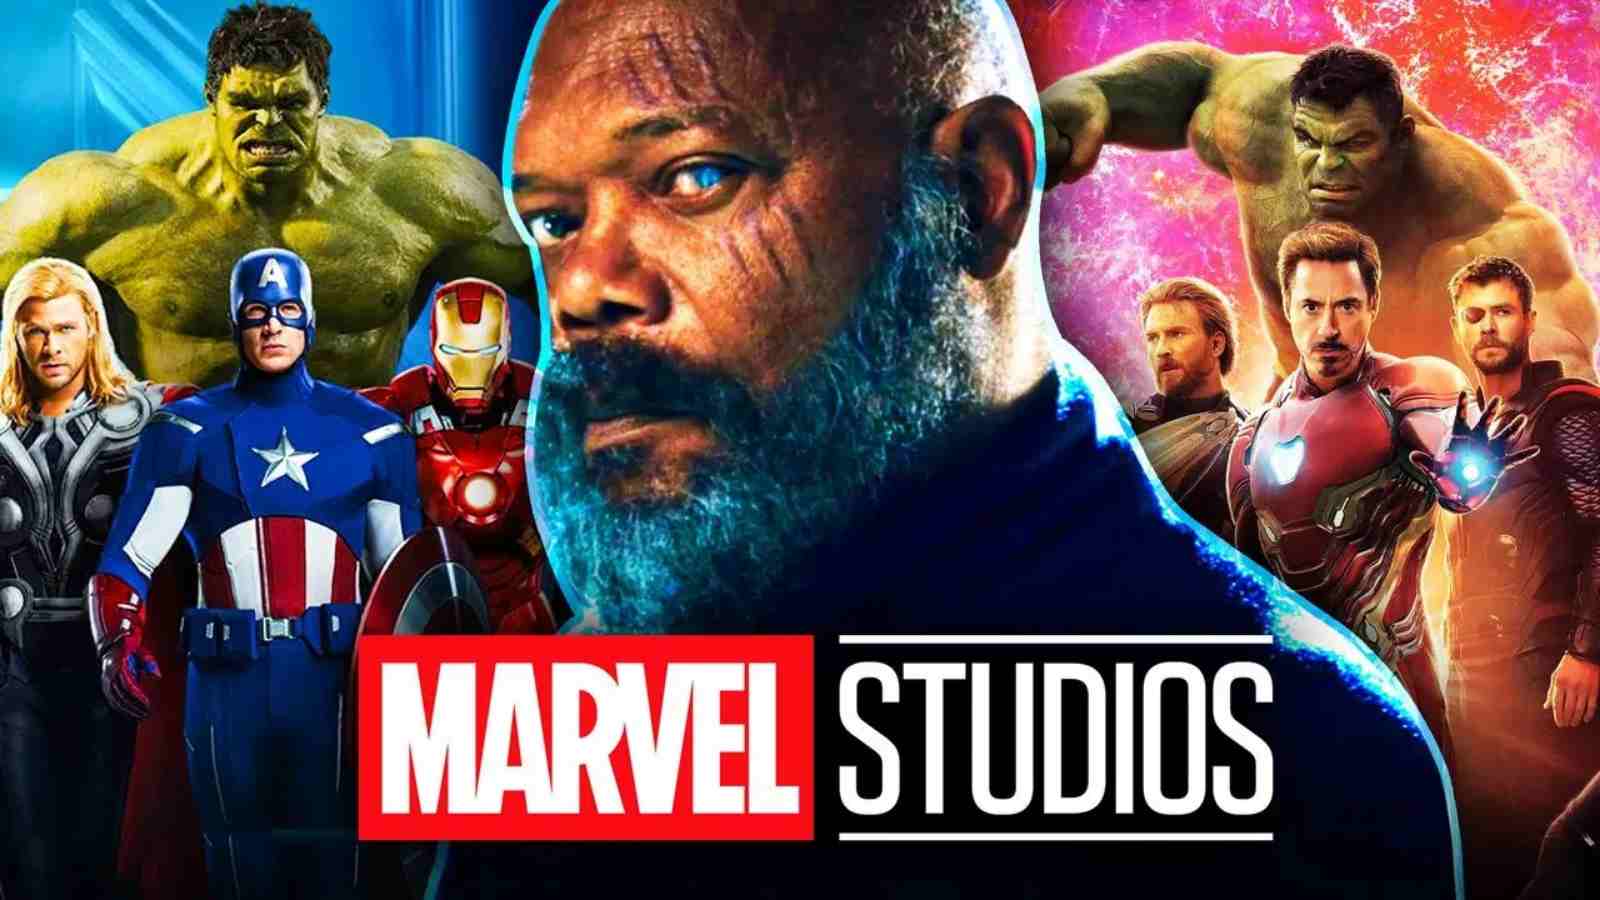 Marvel Studios blamed for mistreatment